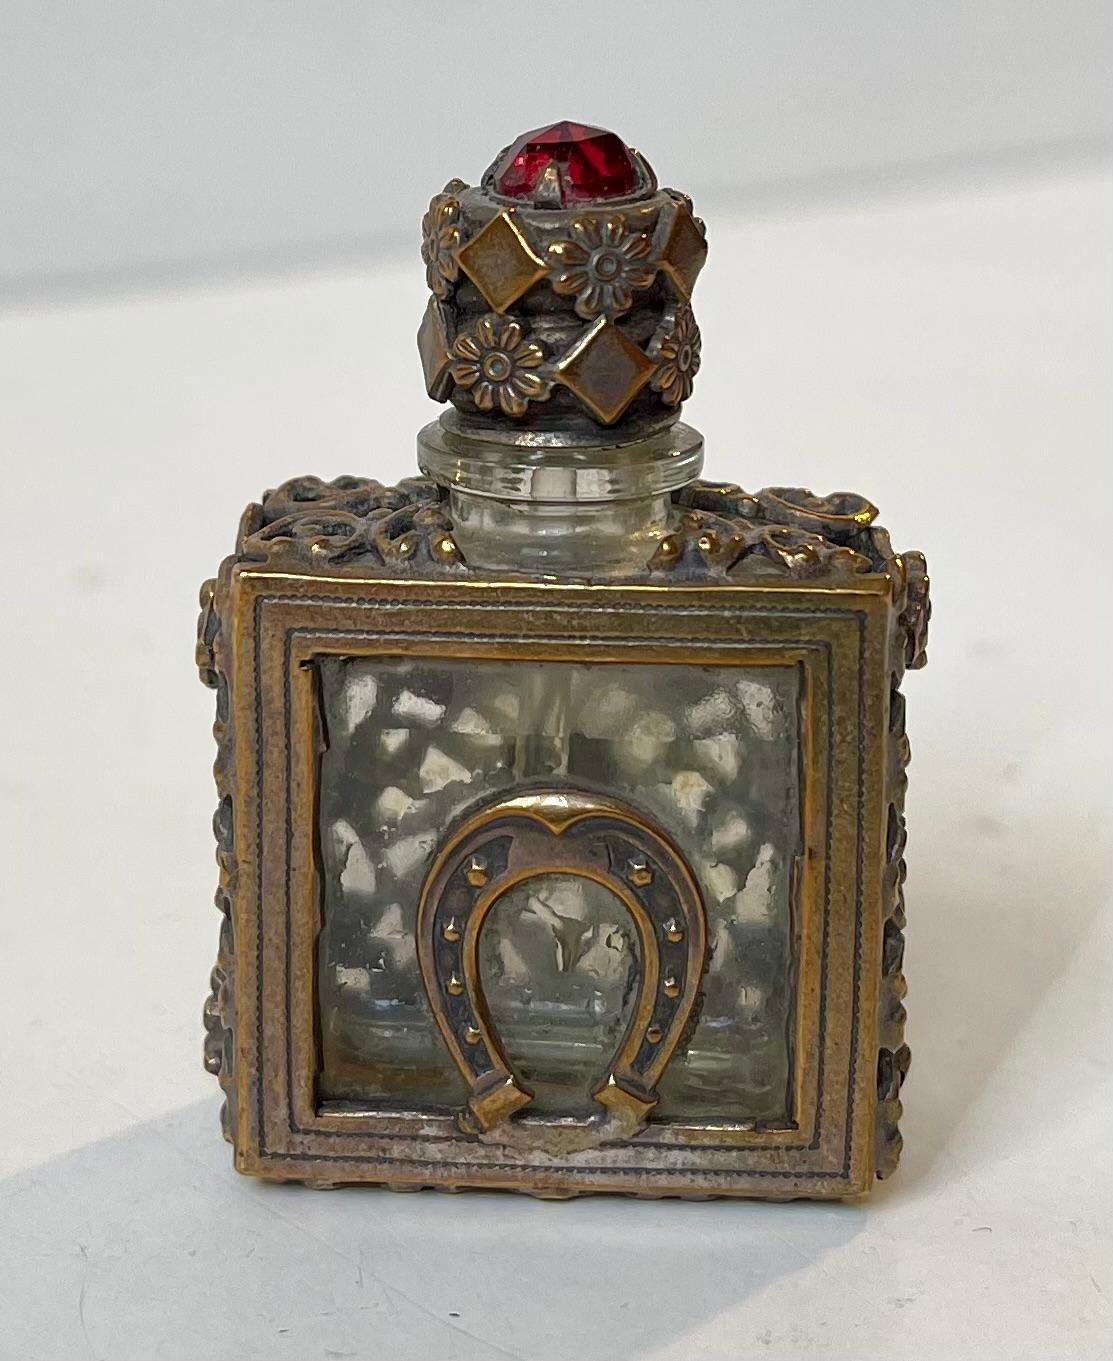 Miniatur-Parfümflasche oder Parfümflasche aus Kristall und verziertem Messing. In Europa, wahrscheinlich England, um 1850-1890. Der Deckel ist mit einem Hufeisen versehen und hat einen facettierten Granat oder ein rotes Glasstück auf dem Deckel.